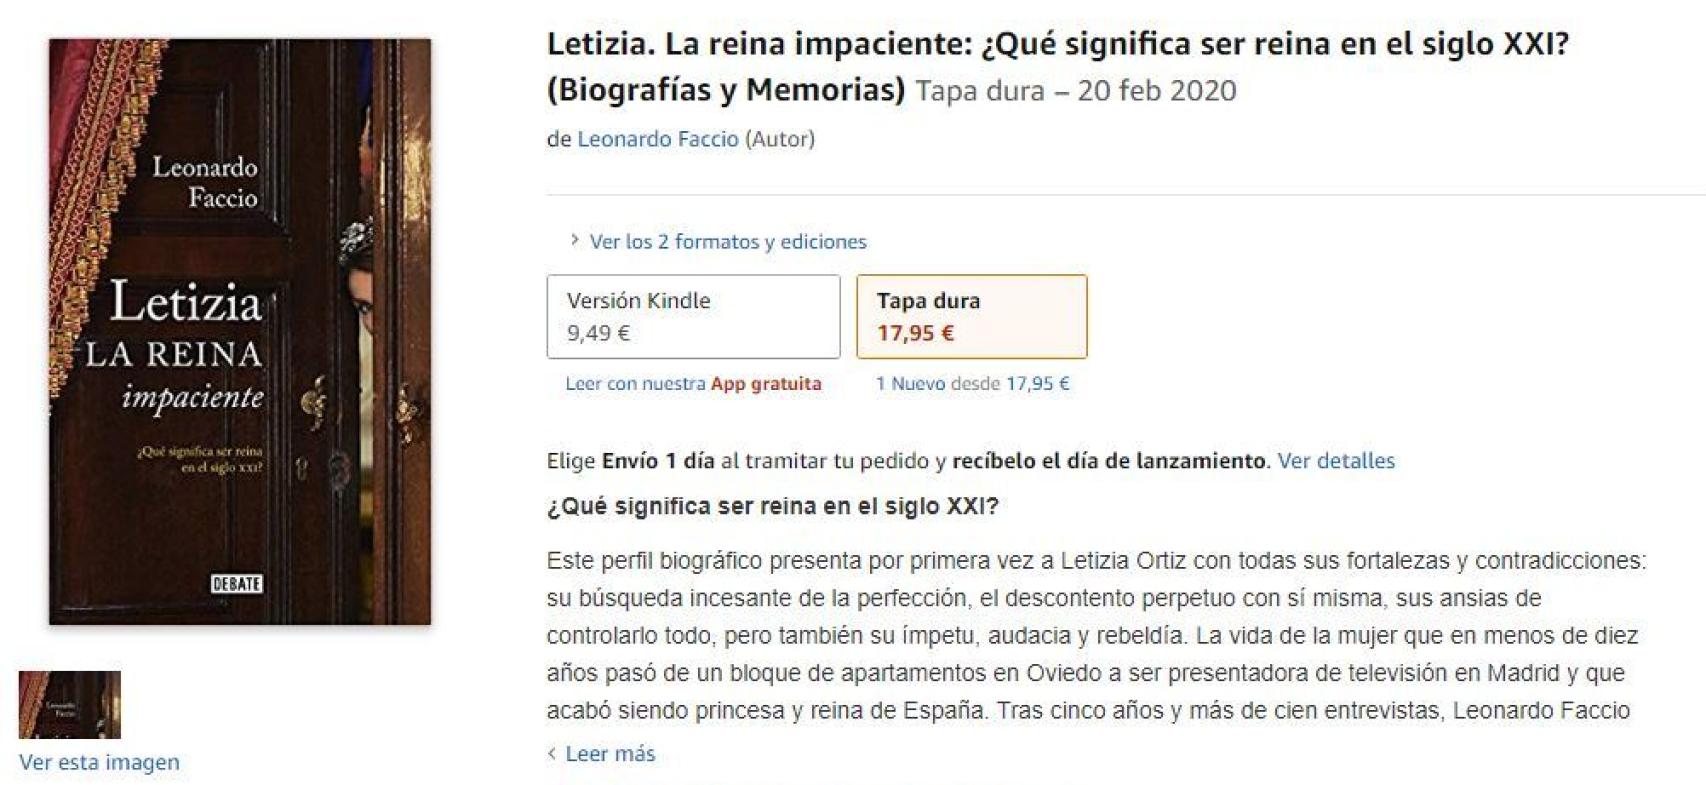 'Letizia, la reina impaciente: ¿qué significa ser reina en el siglo XXI', ya disponible en Amazon.